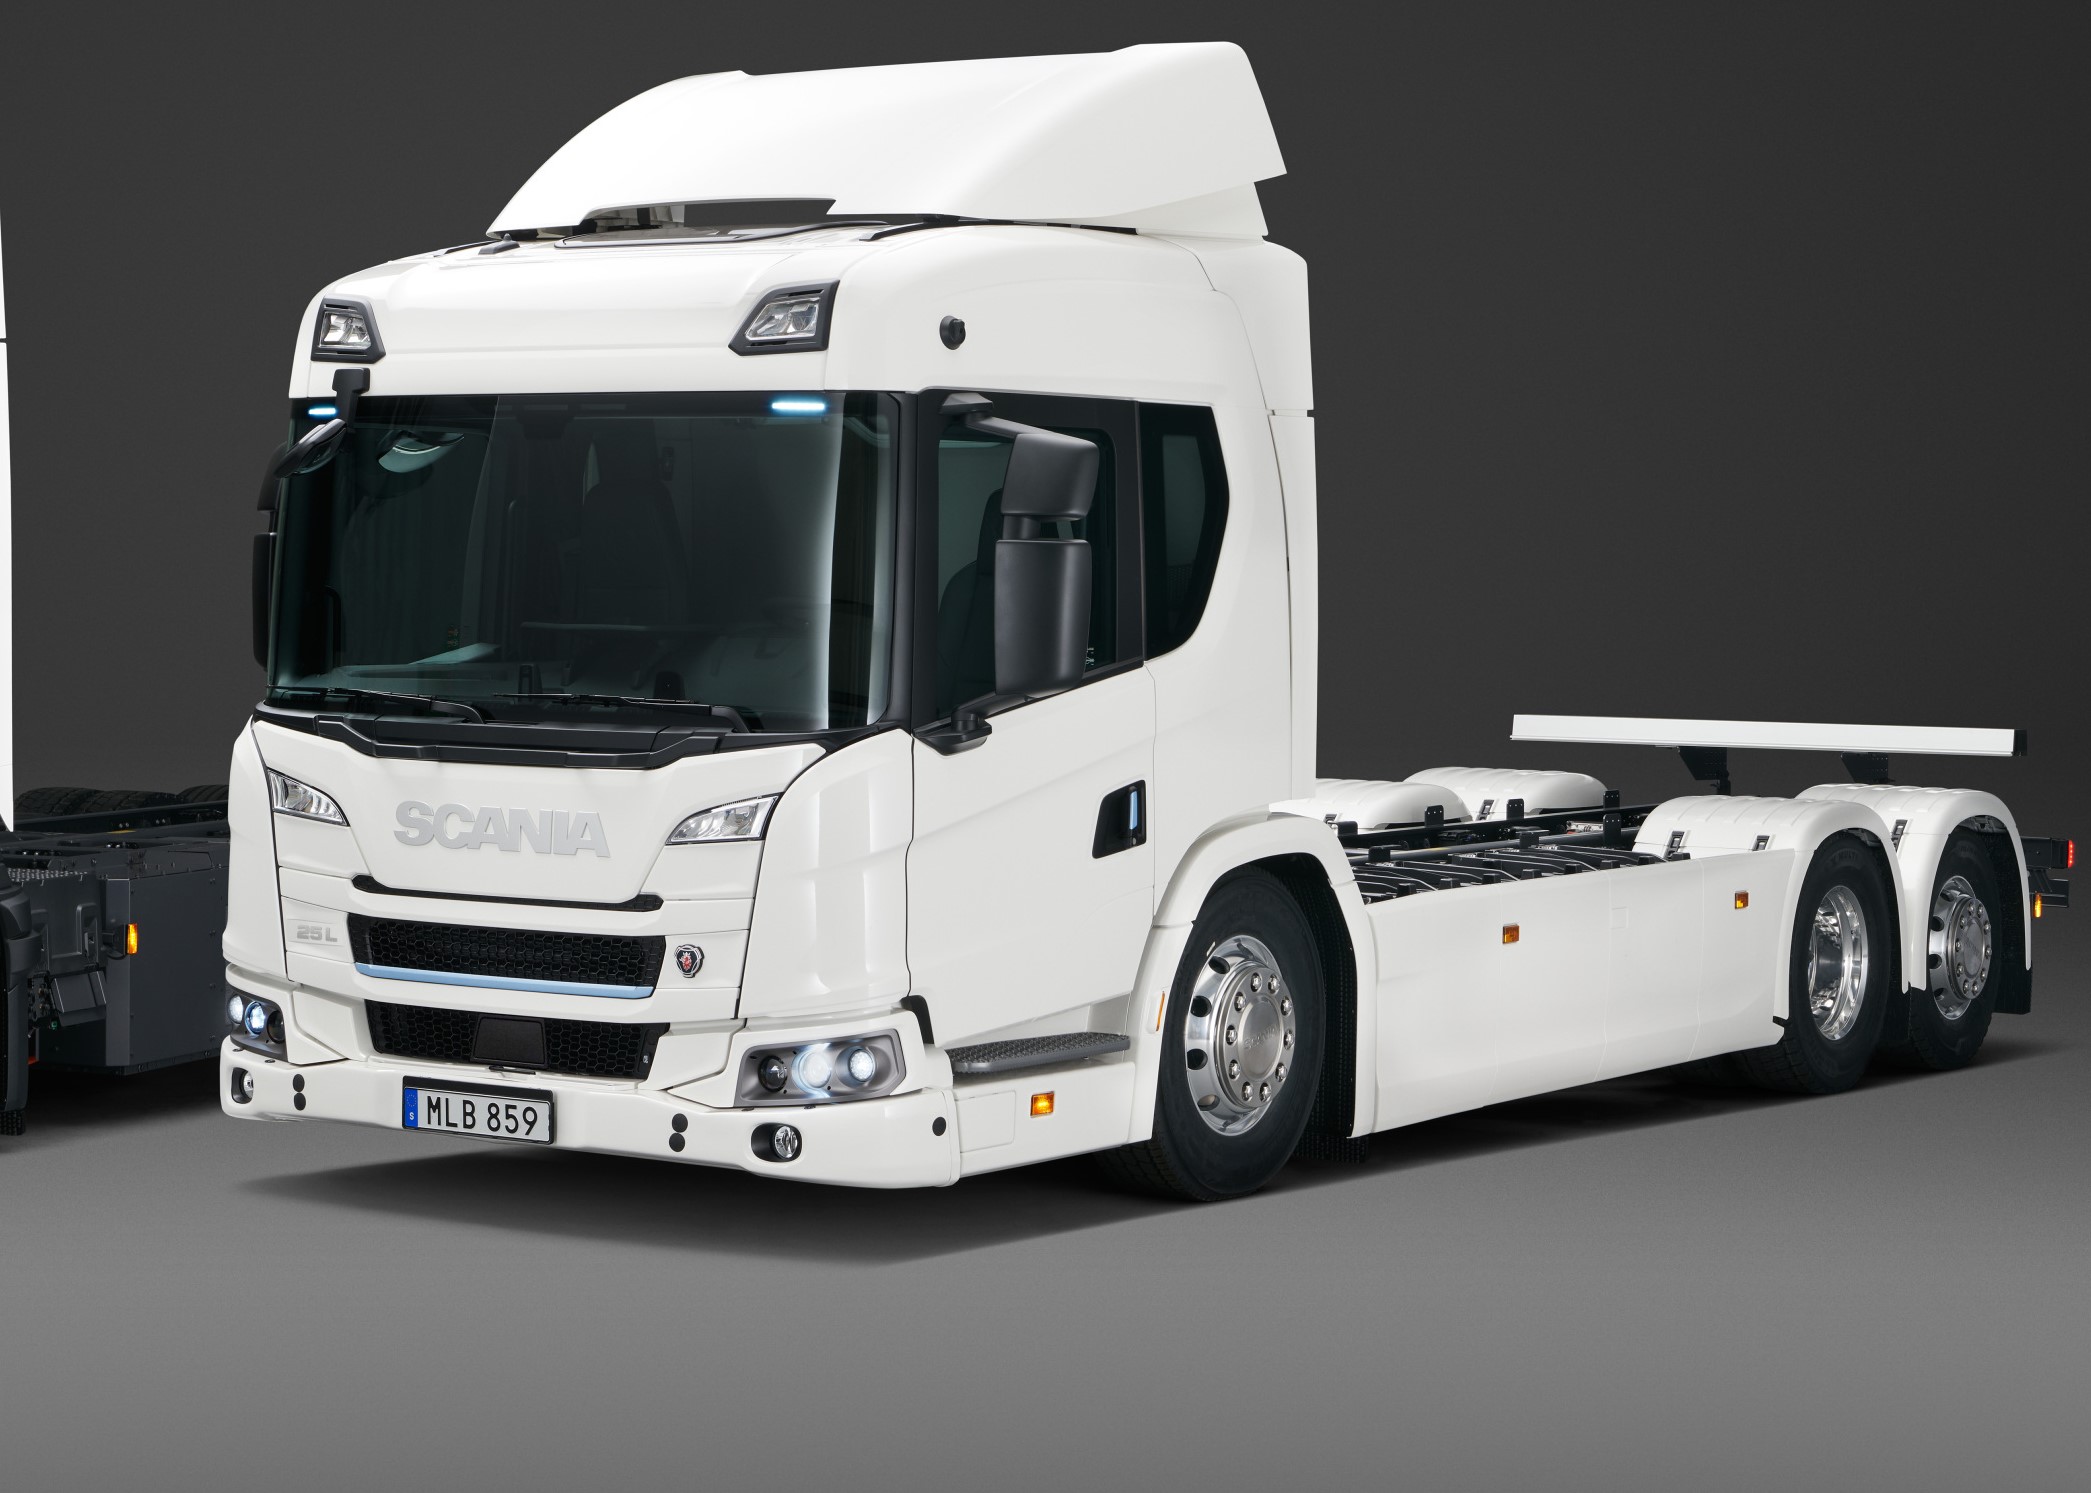  Scania презентовала электрогрузовик с запасом хода 250 км (видео) 